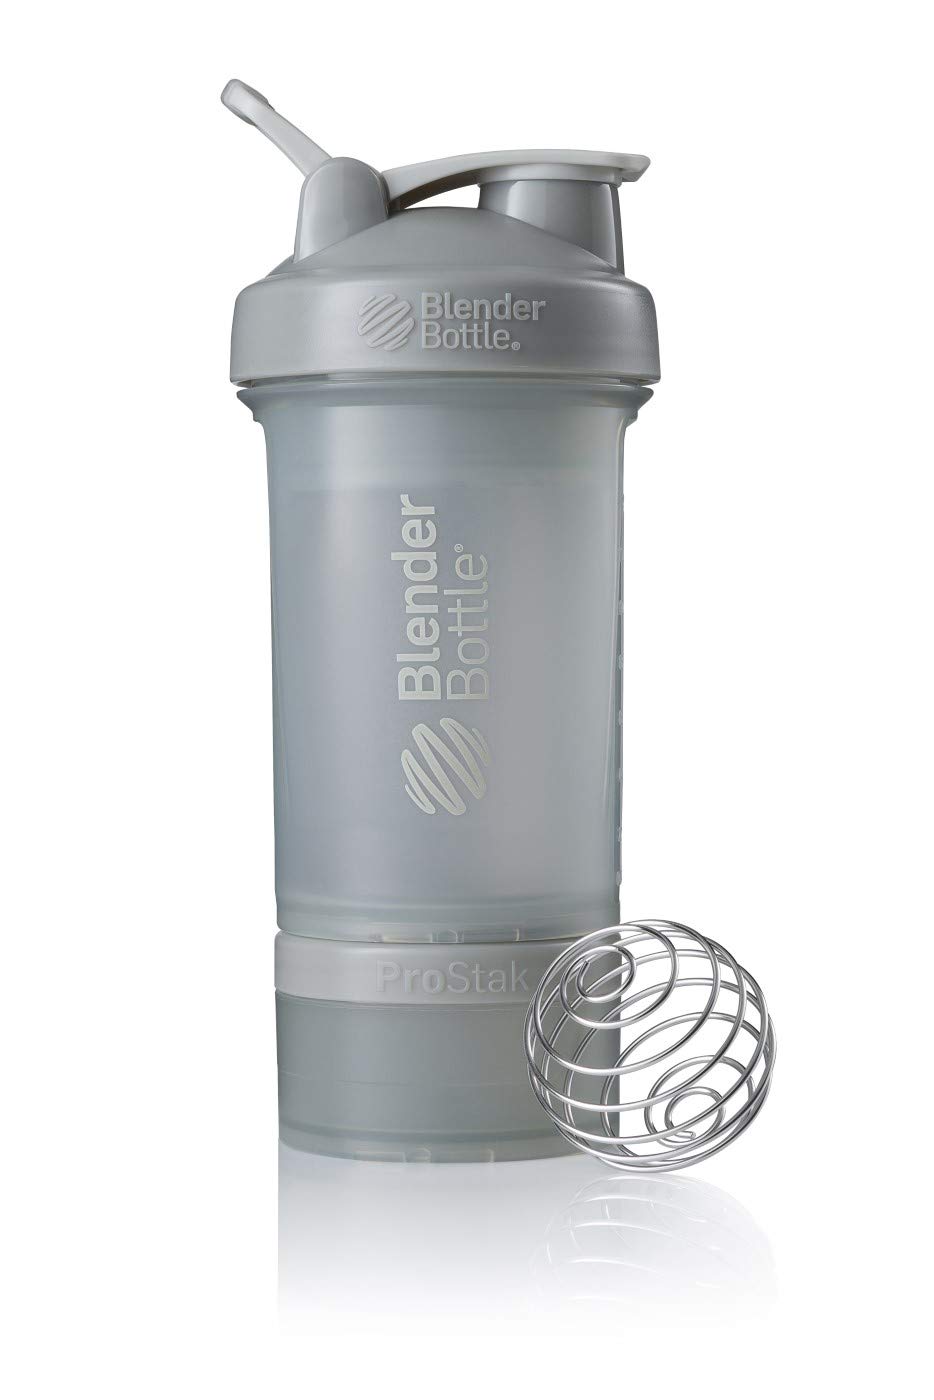 BlenderBottle ProStak Protein Shaker mit BlenderBall mit 2 Container 150 ml und 100 ml, 1 Pillenfach, optimal für Eiweiß, Diät und Fitness Shakes, skaliert bis 450ml, grau (650ml)